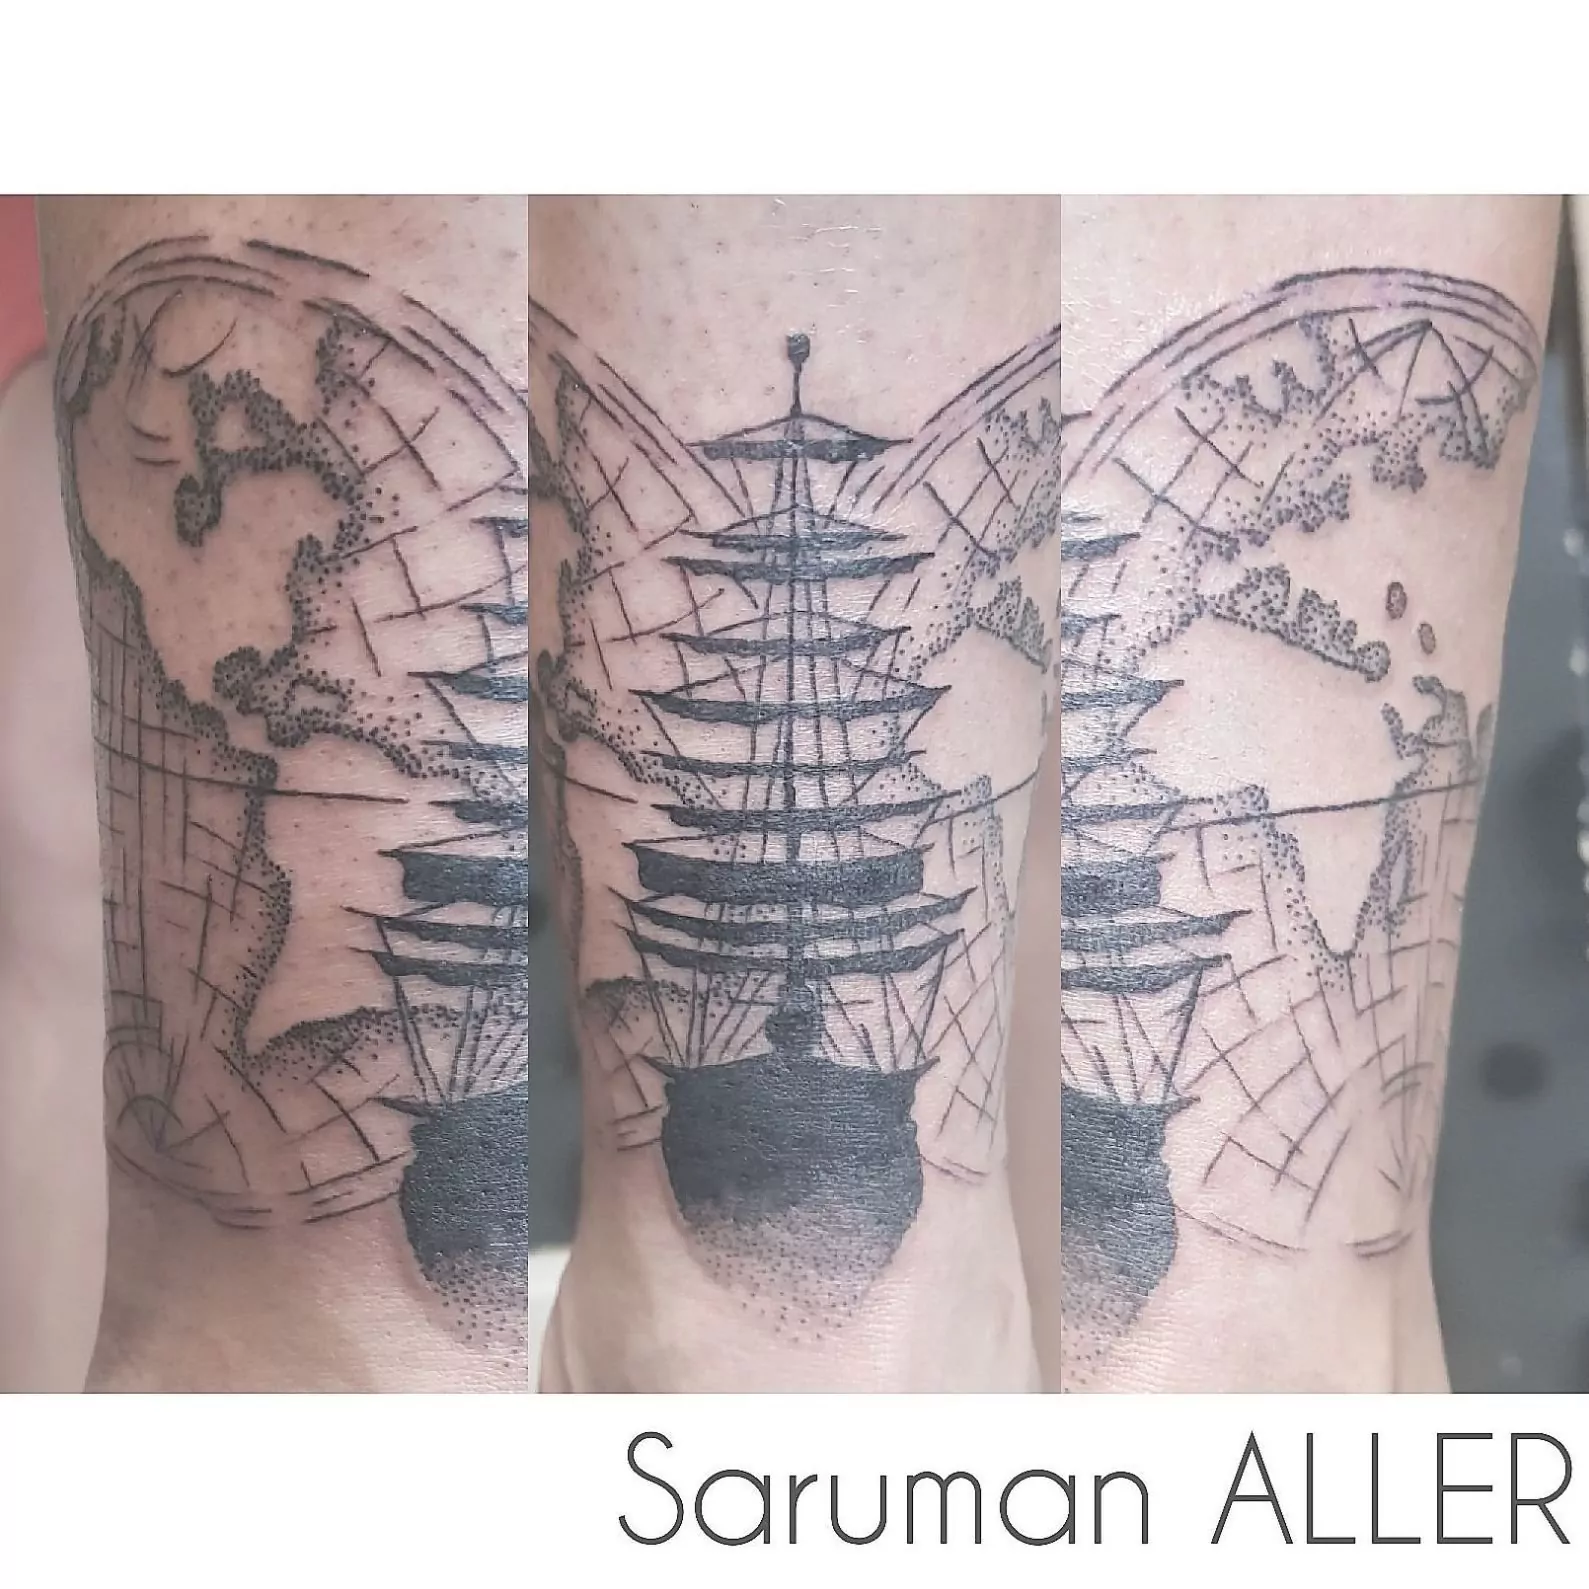 Tatuaje de un barco pirata en la pierna